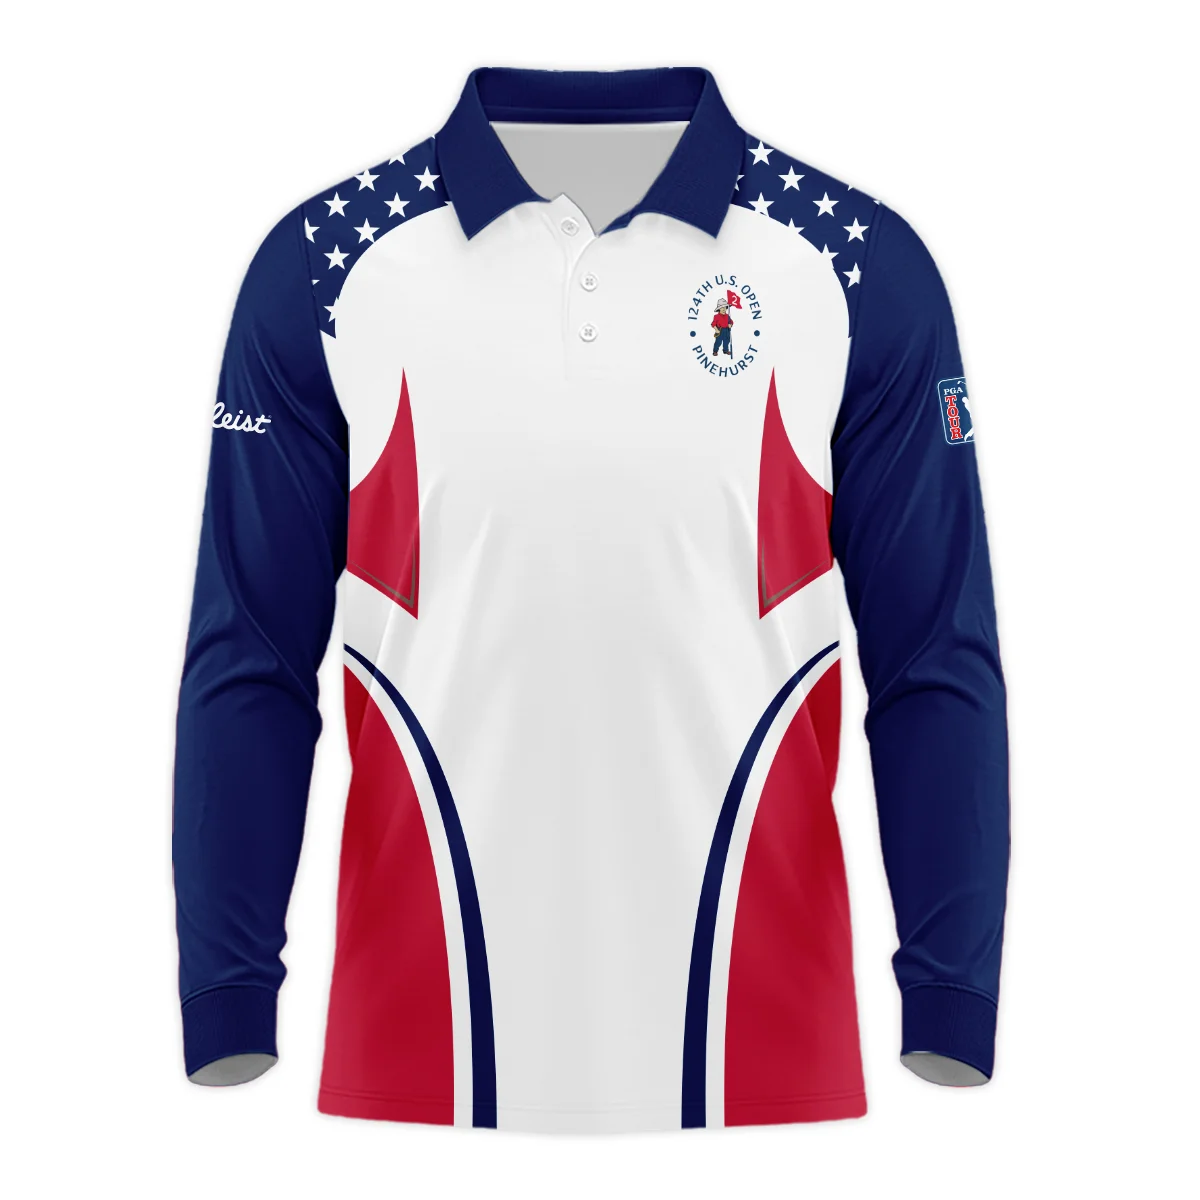 124th U.S. Open Pinehurst Titleist Stars White Dark Blue Red Line Vneck Polo Shirt Style Classic Polo Shirt For Men